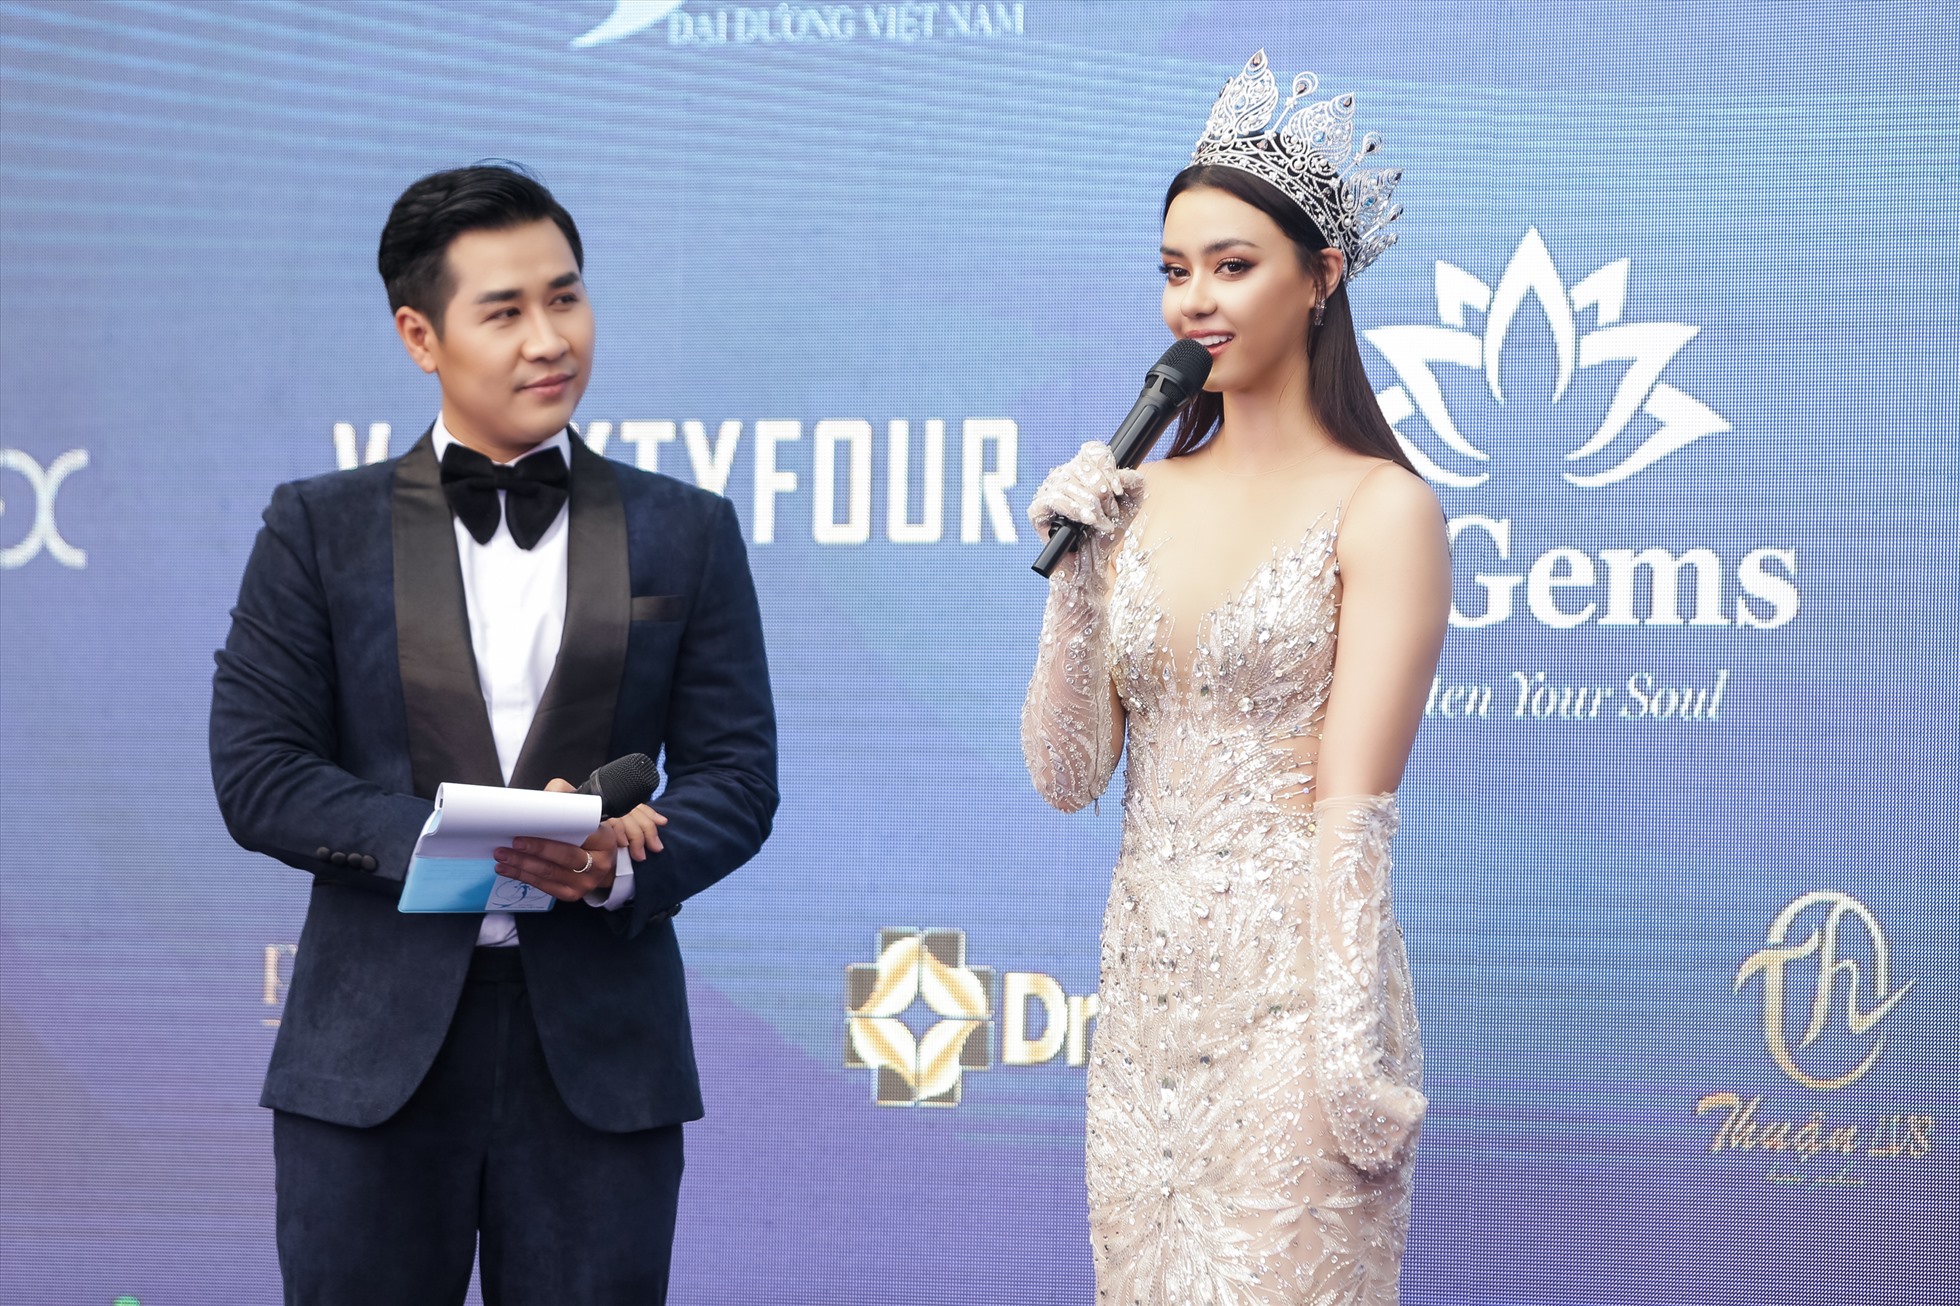 Hoa hậu Hoàn vũ Thái Lan xuất hiện tại sự kiện. Ảnh: Ban tổ chức.